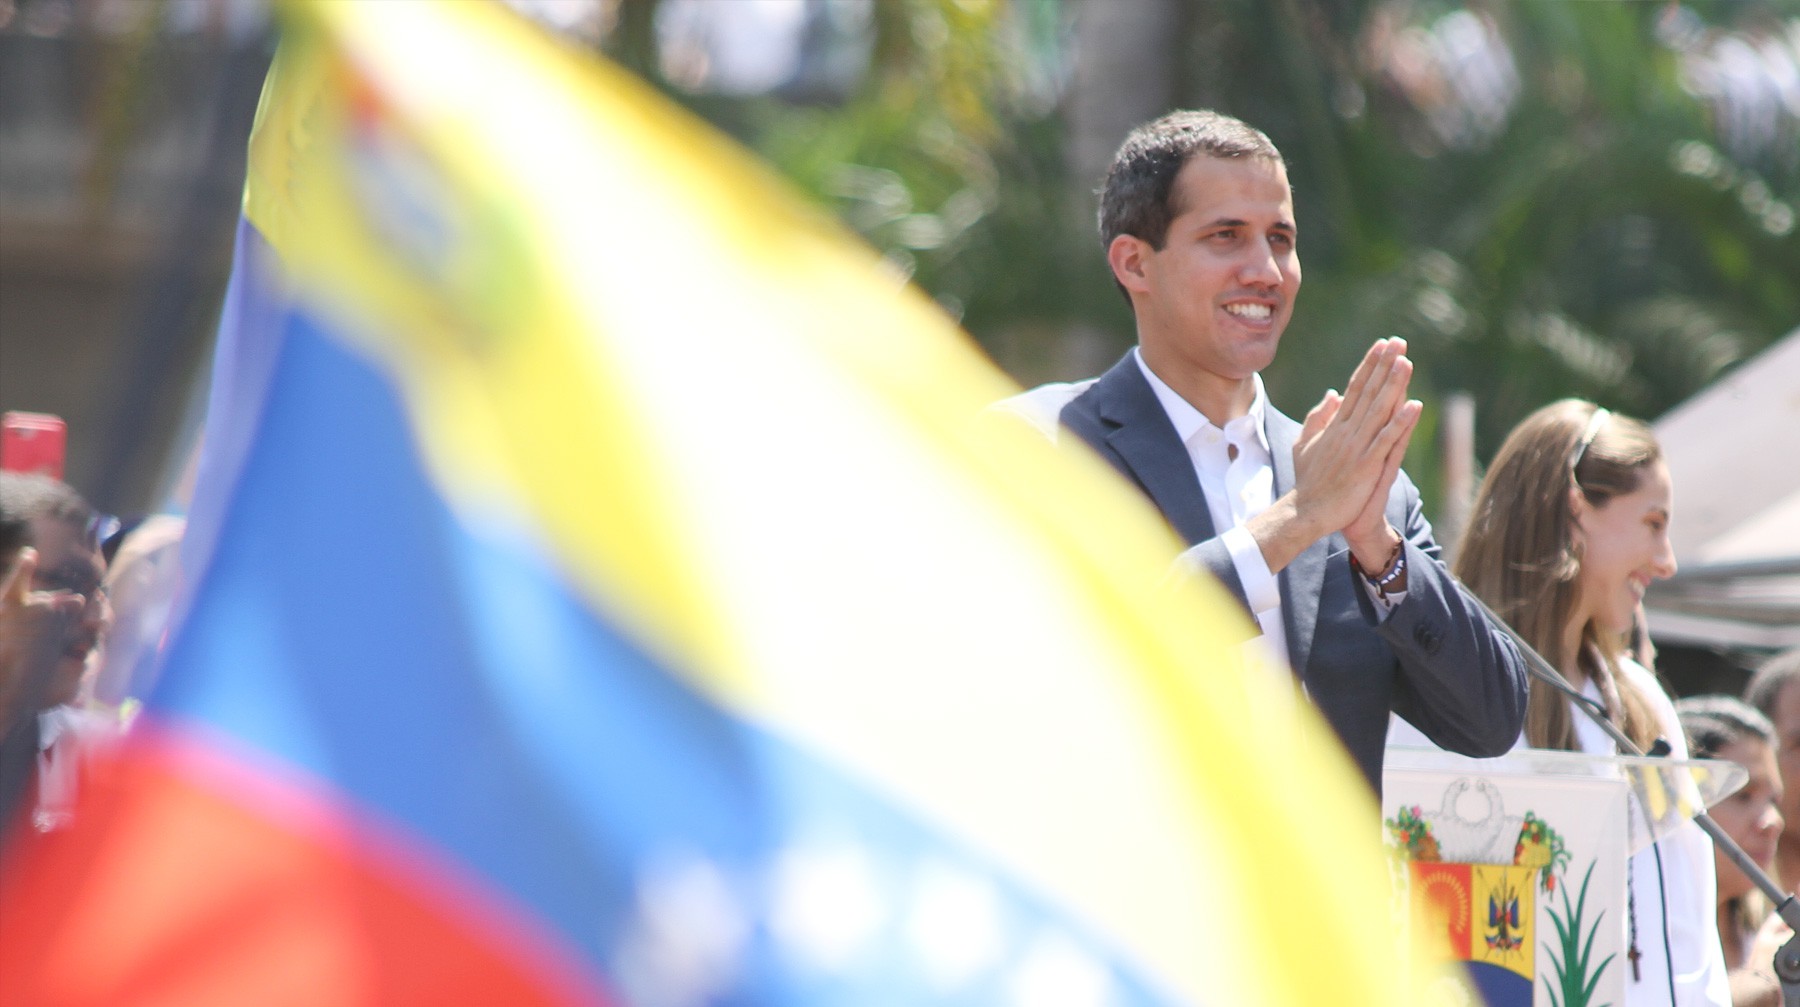 Dailystorm - Италия поставила подножку признанию Гуайдо главой Венесуэлы со стороны ЕС